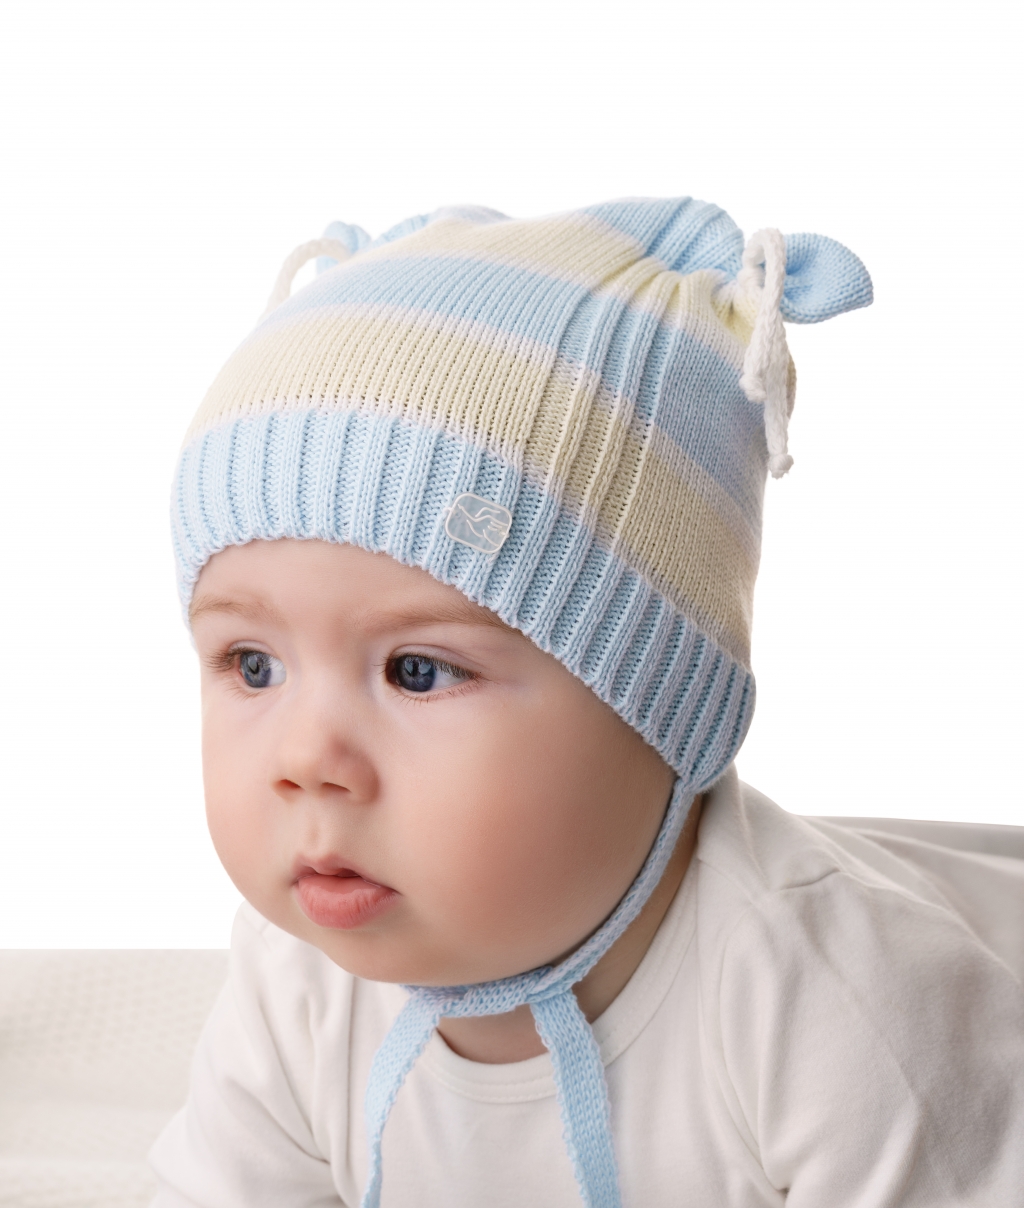 Что необходимо знать родителям , чтобы правильно одевать ребенка в холодную погоду?